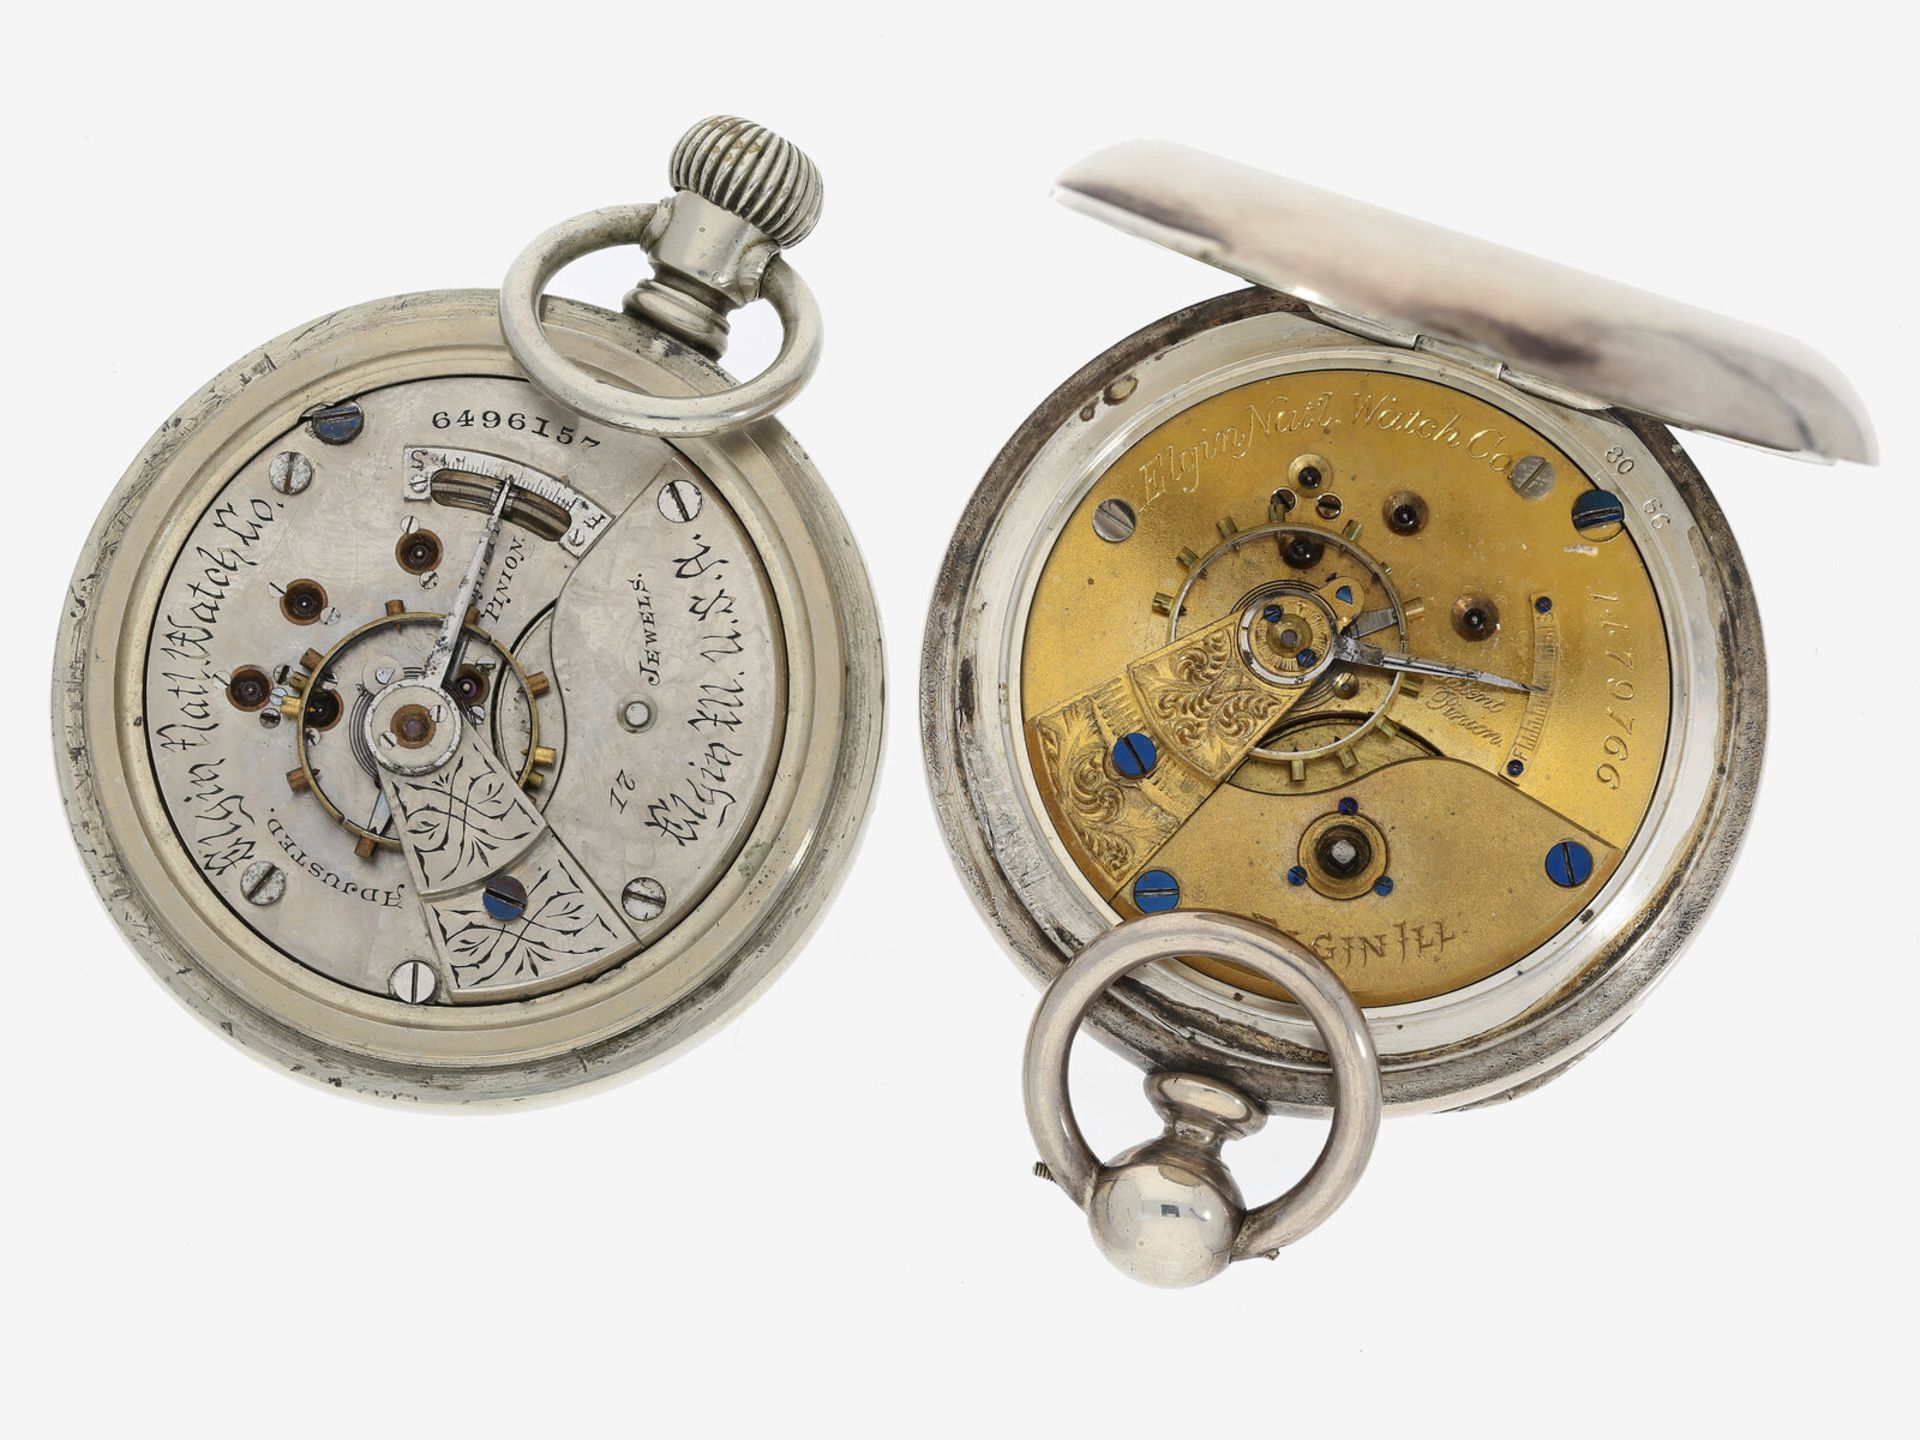 Taschenuhr: 2 schwere amerikanische Taschenuhren von Elgin, dabei eine seltene Eisenbahneruhr, um 19 - Bild 2 aus 2